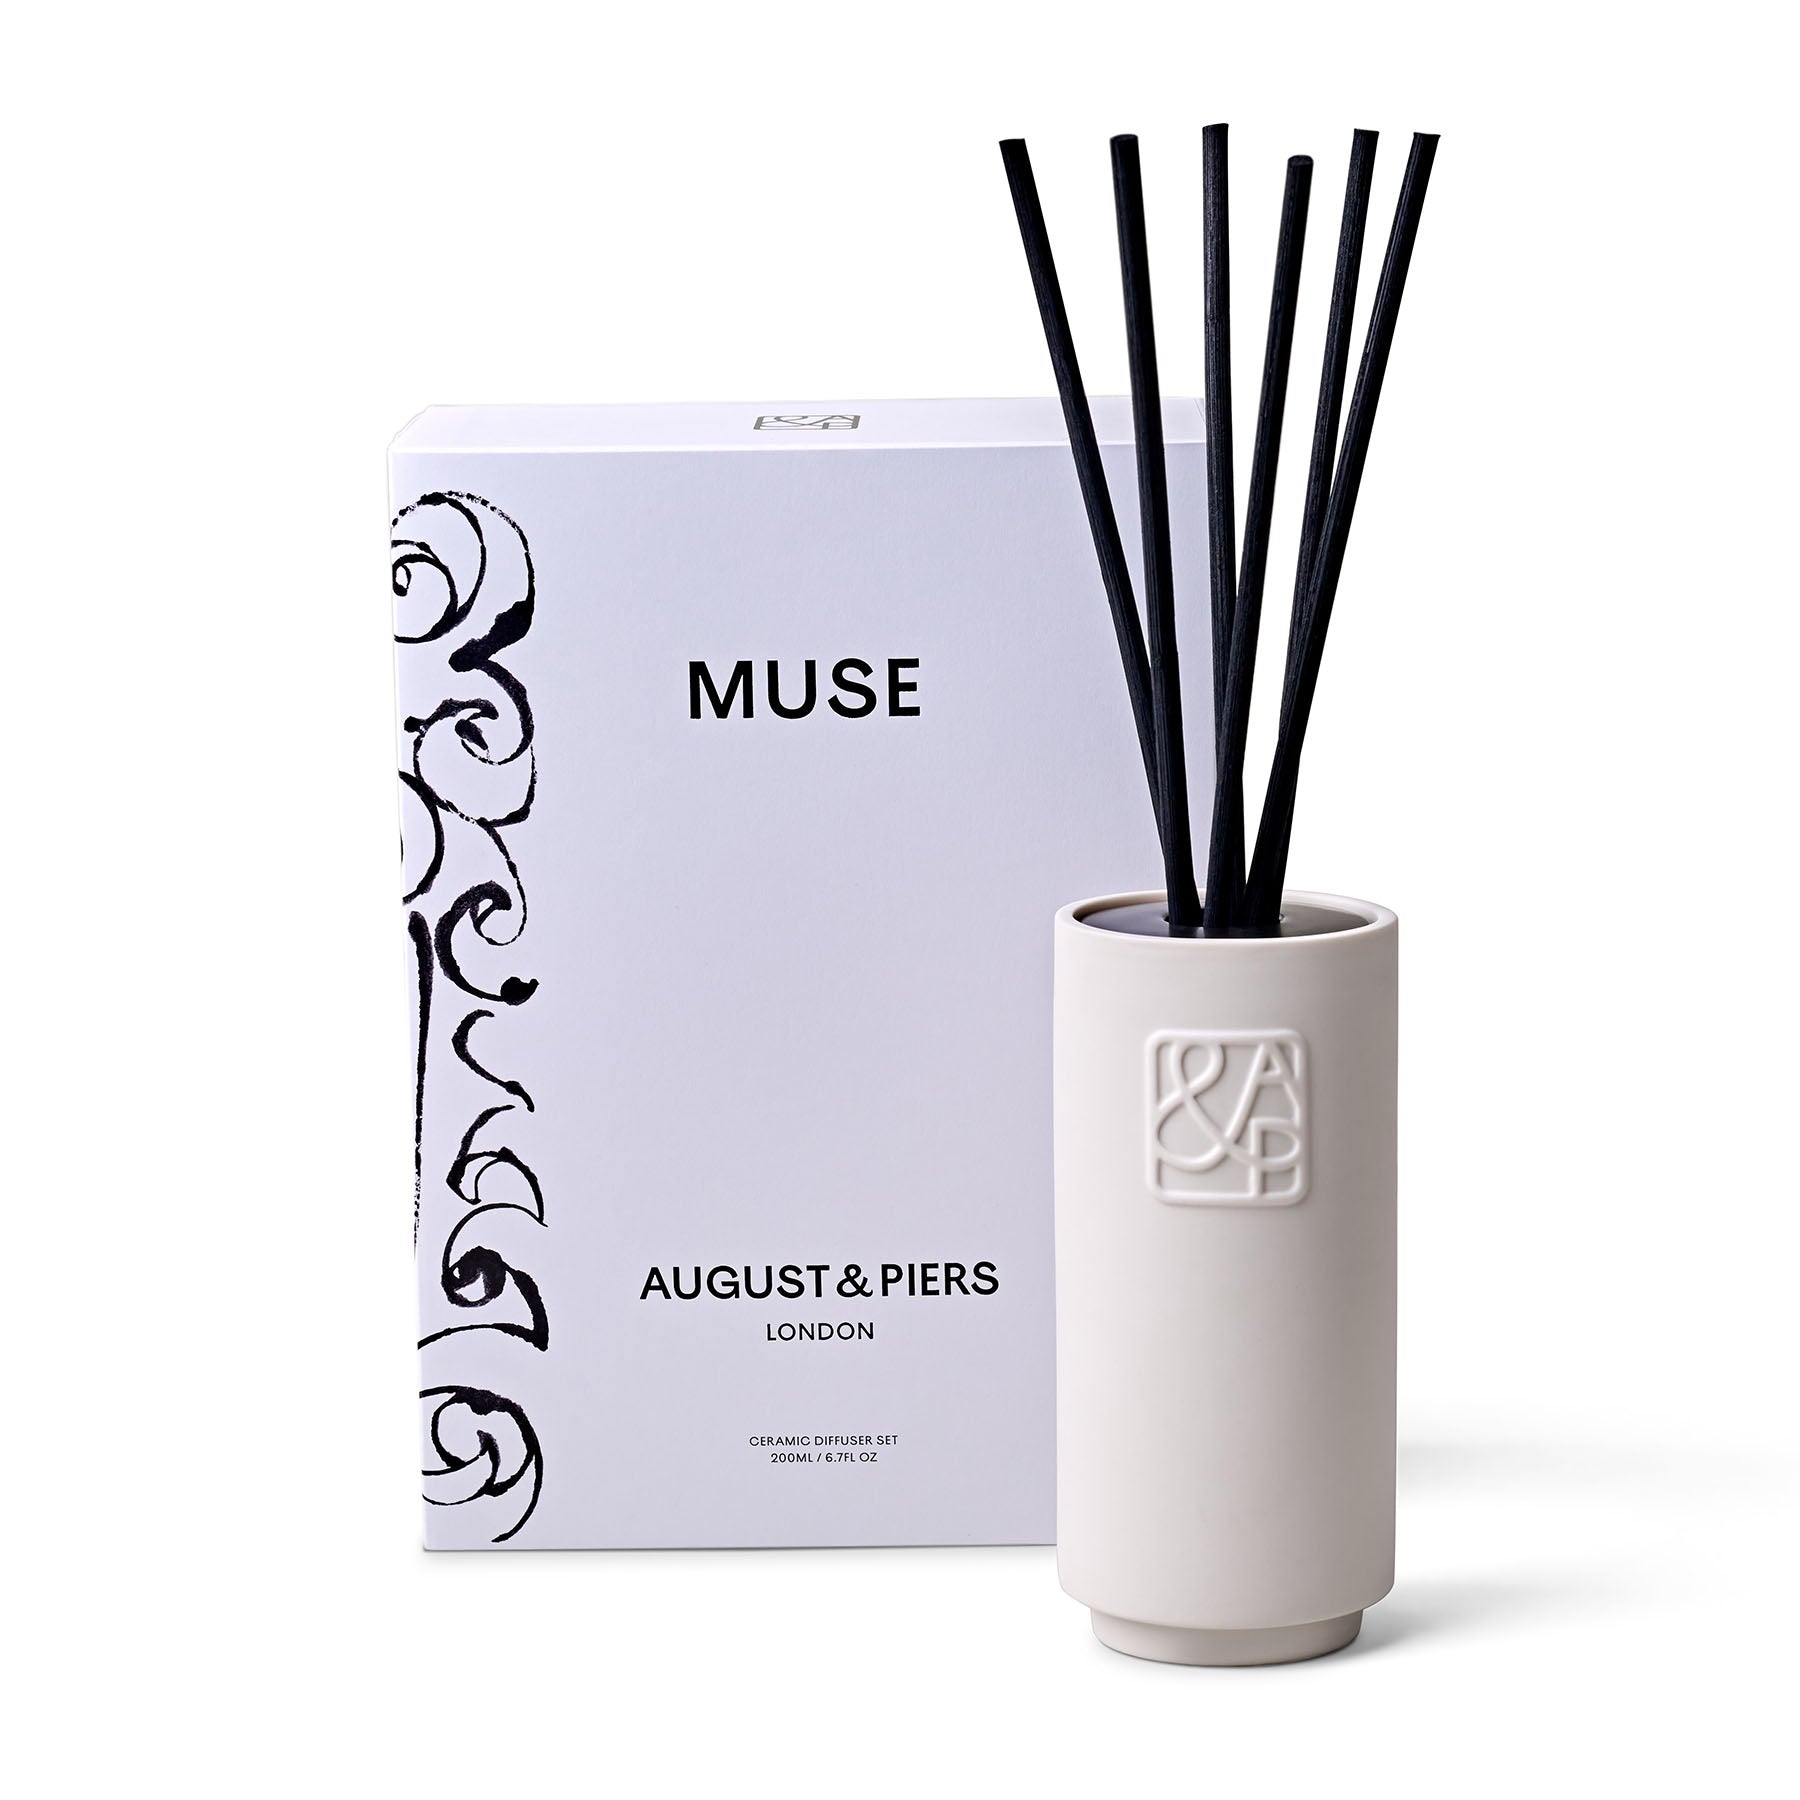 August & Piers Muse Ceramic Diffuser Set